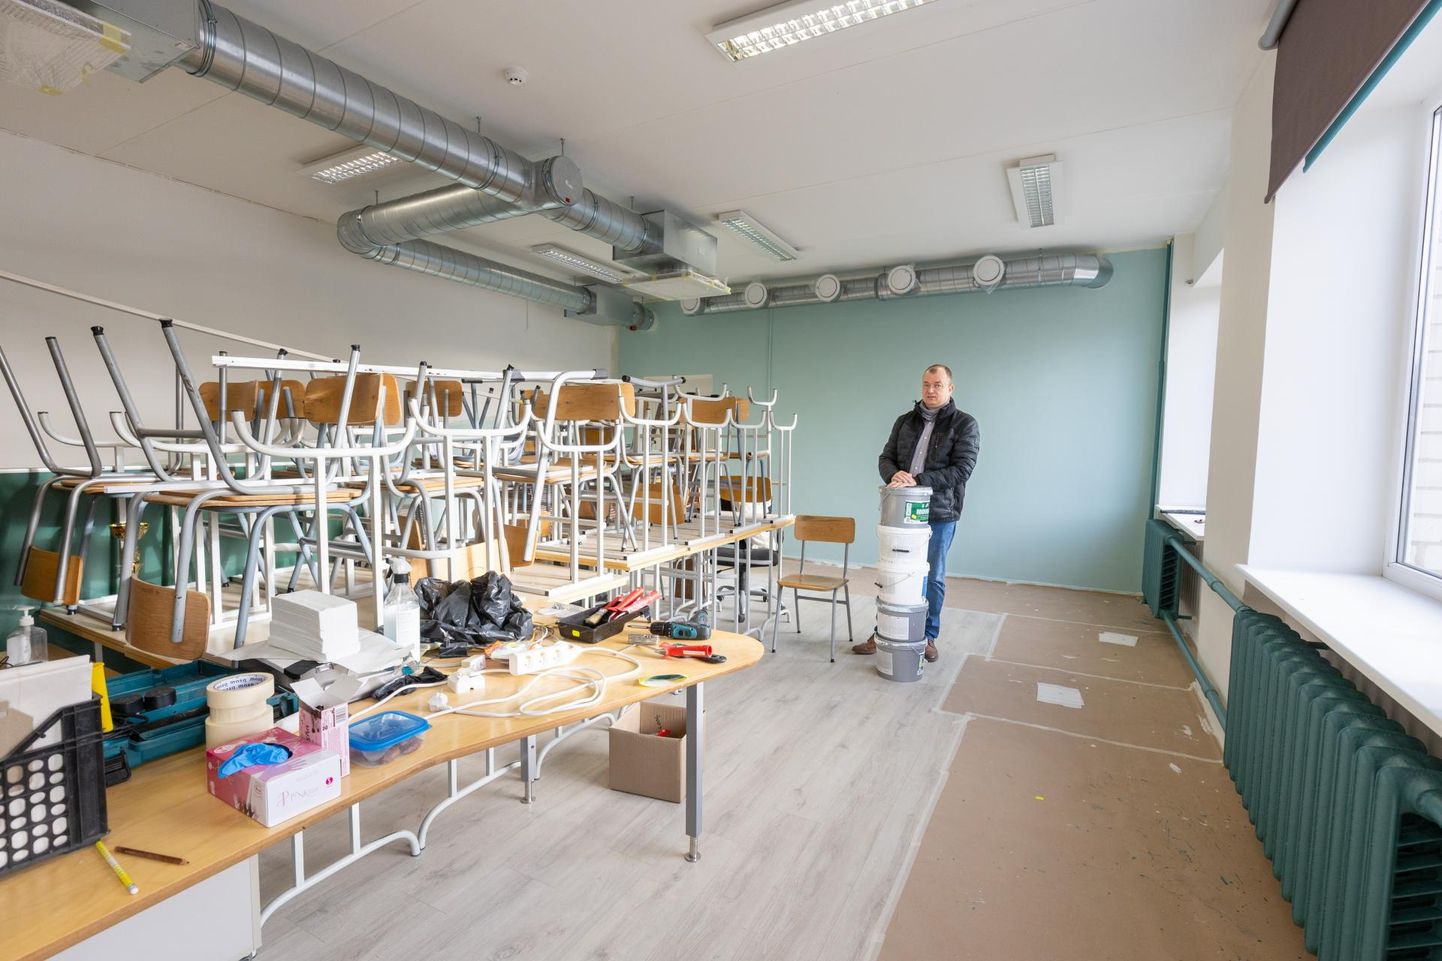 Kitzbergi gümnaasiumi VII-b klassi laste vanemad, kelle hulgas on Meelis Rull, on koolivaheajal oma laste koduklassi remontinud ning uuel nädalal on värske ilmega ruum valmis õpilasi vastu võtma.